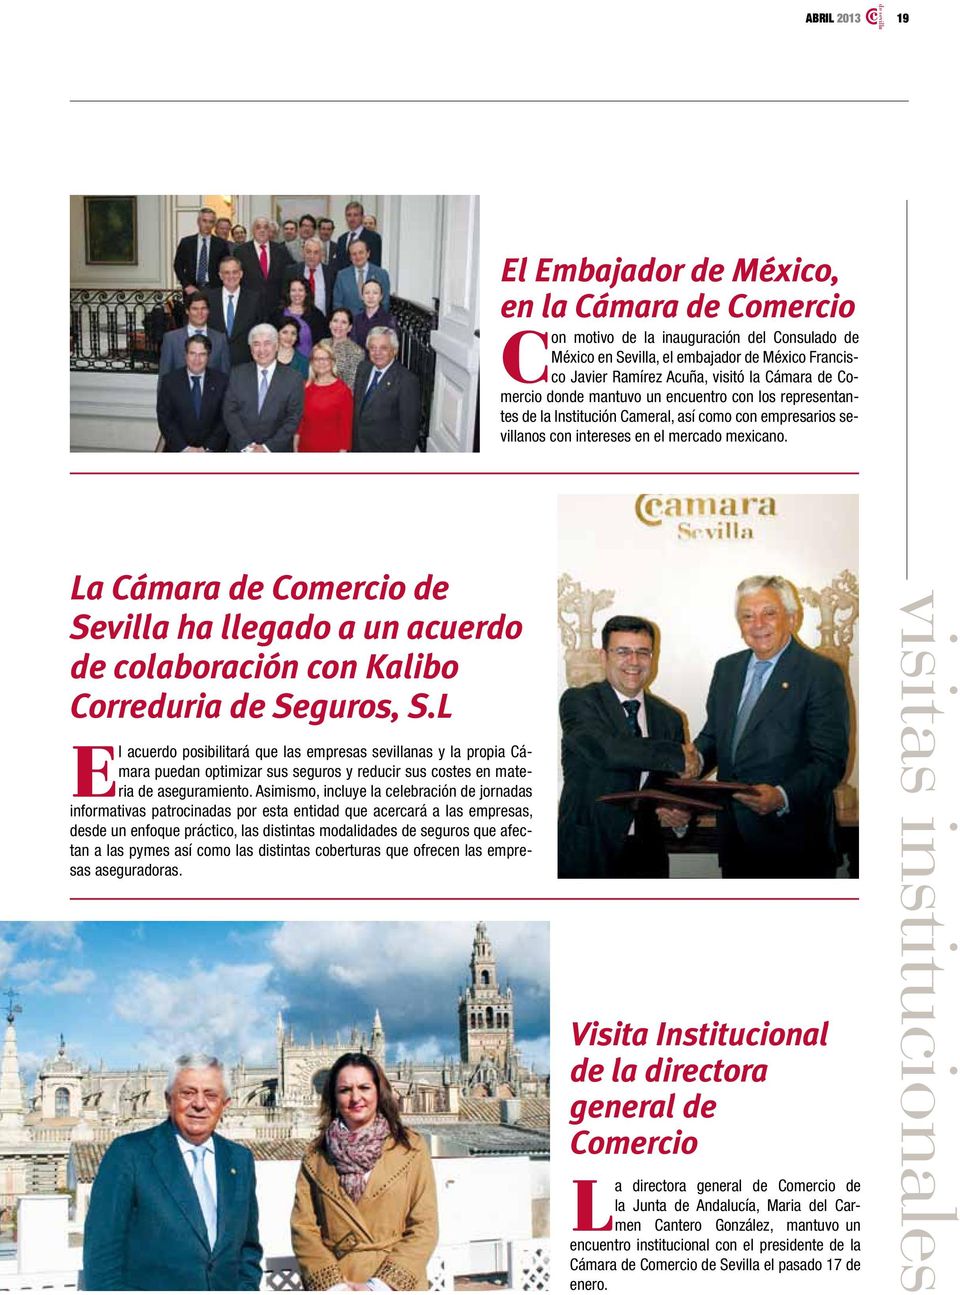 La Cámara de Comercio de Sevilla ha llegado a un acuerdo de colaboración con Kalibo Correduria de Seguros, S.